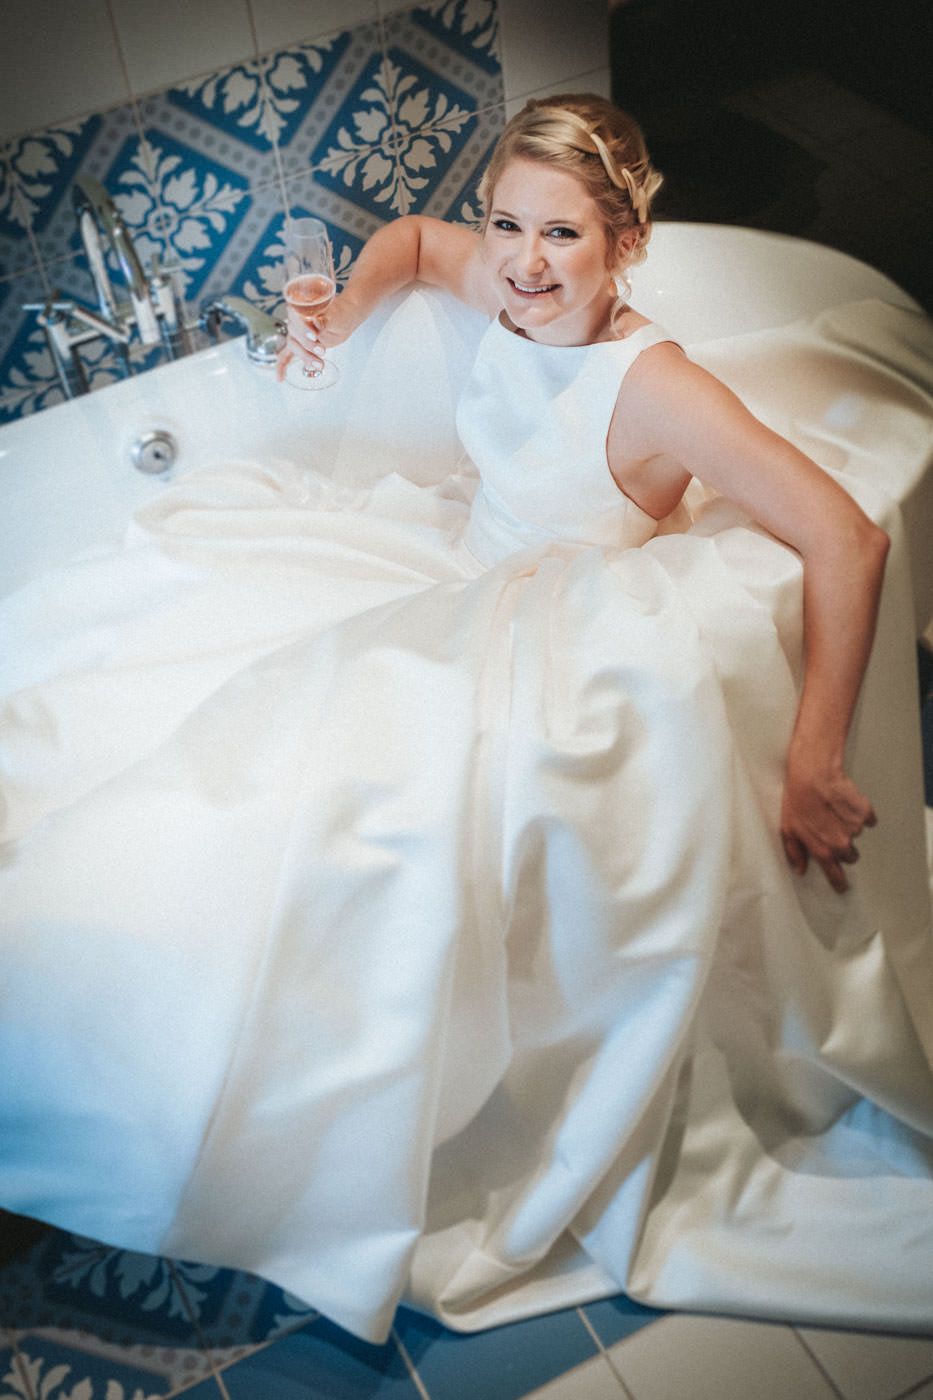 Braut im Brautkleid in schicker Badewanne mit Sektglas in der Hand